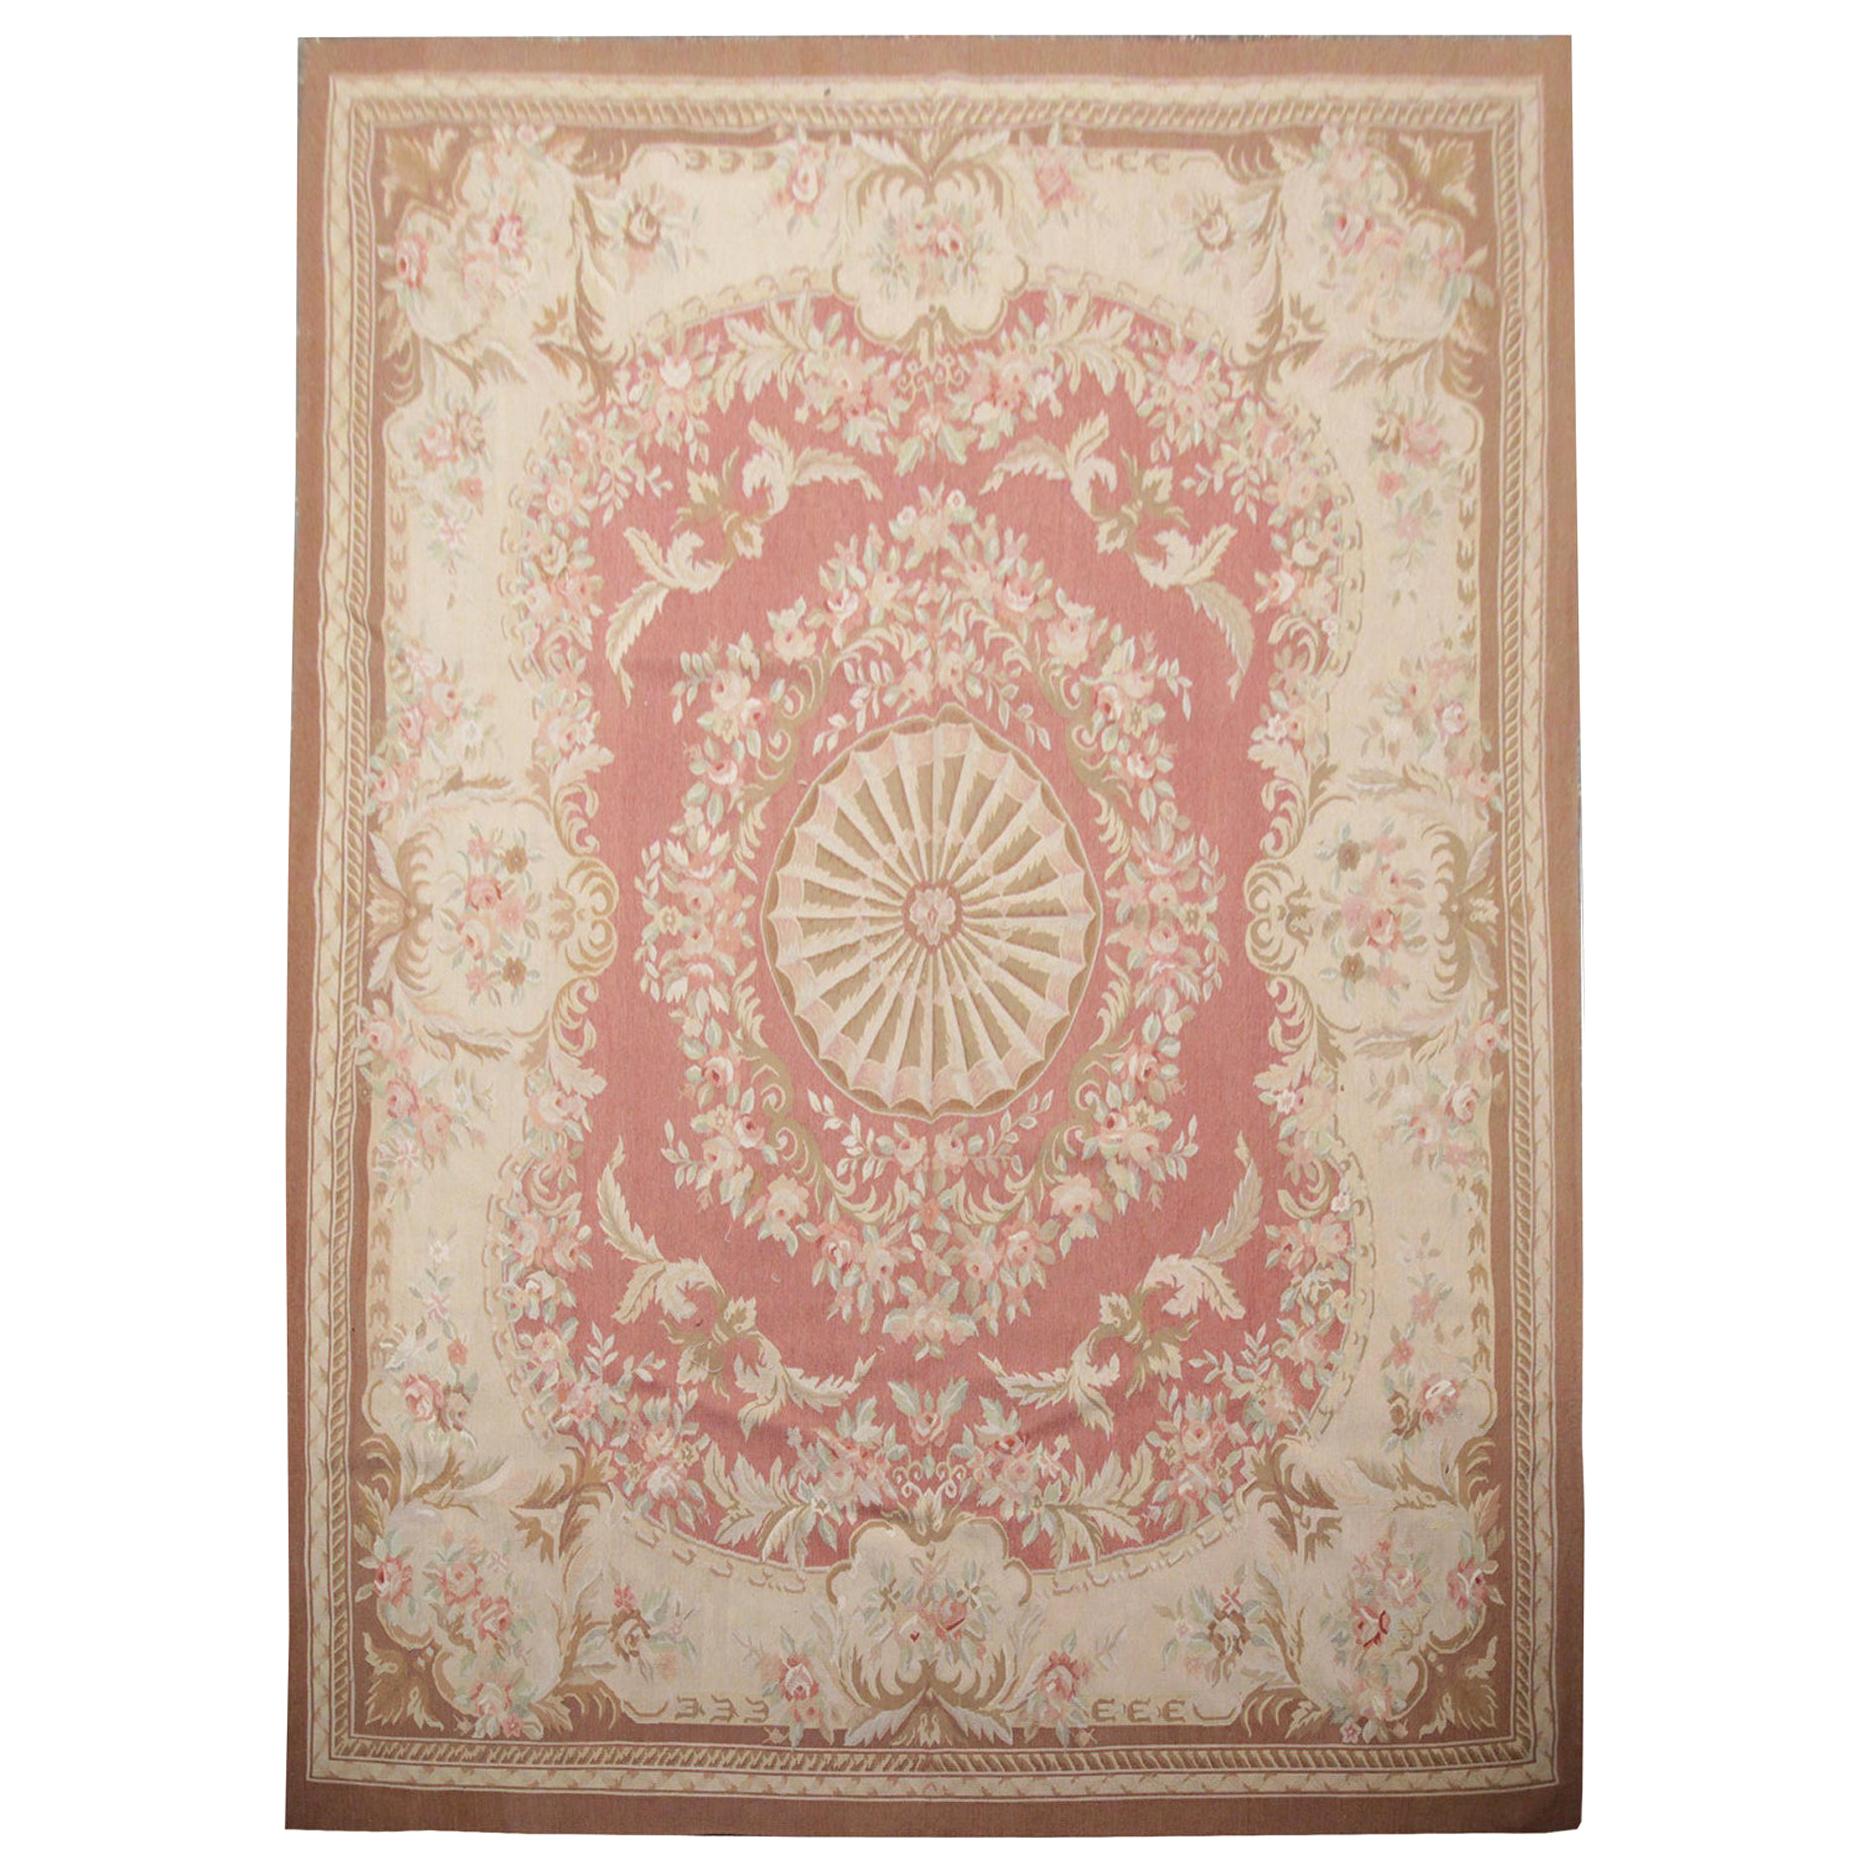 Handgefertigter Vintage-Teppich im Aubusson-Stil aus französischer, rosa und beigefarbener Wolle, 1980